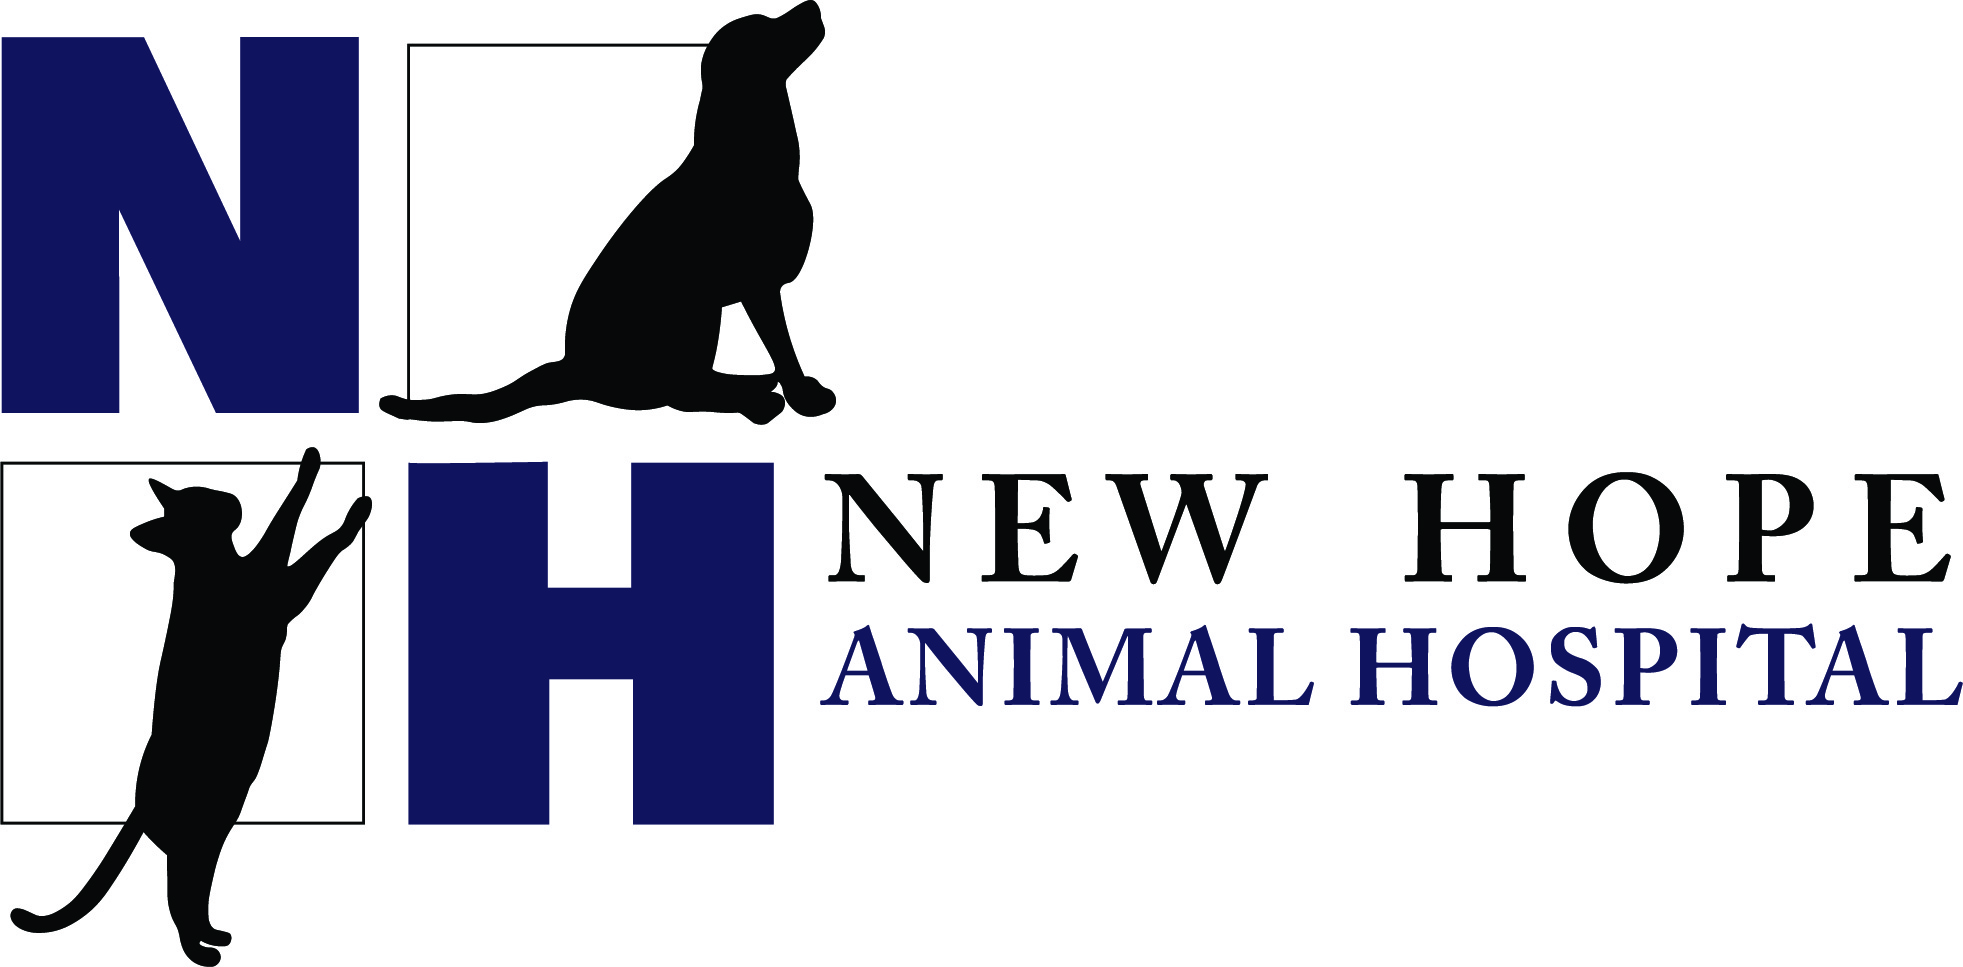 New Hope Animal Hospital – Minnesota